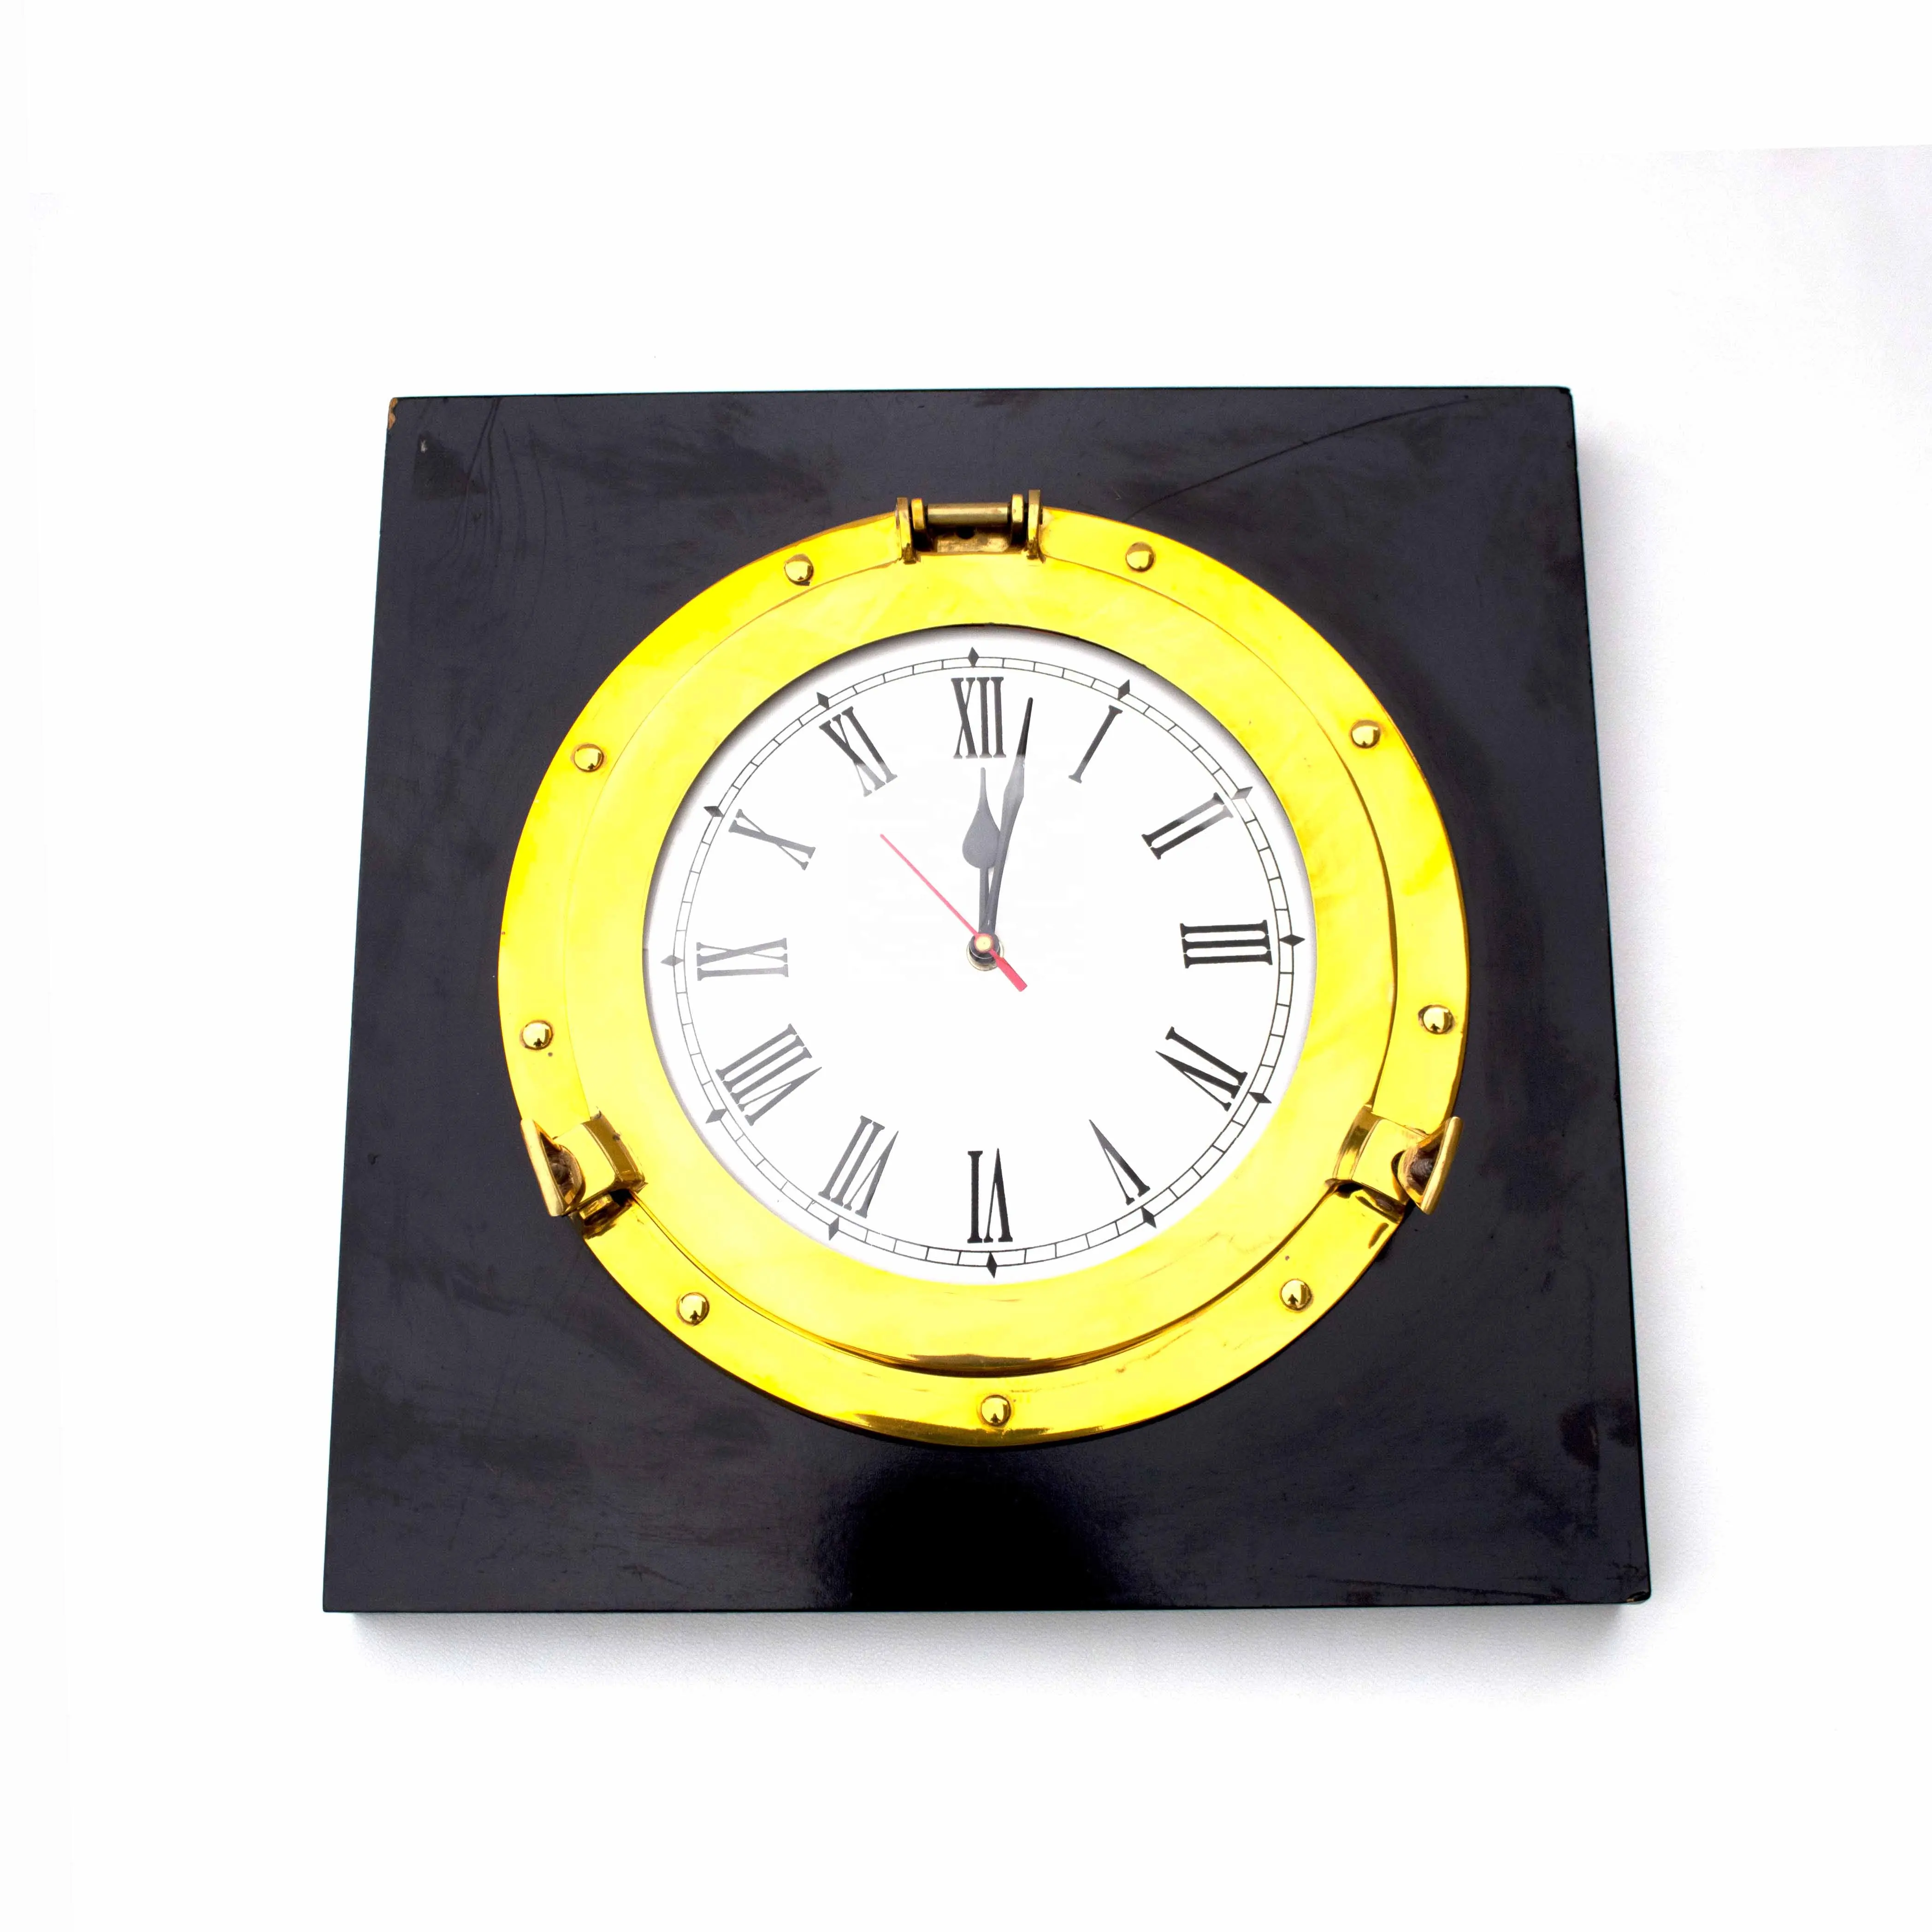 تصميم كلاسيكي ساعة أنيقة لديكور المكاتب مظهر إطار نحاسي شكل مرآة دائرية لجدار بحري طلاء ذهبي نهائي